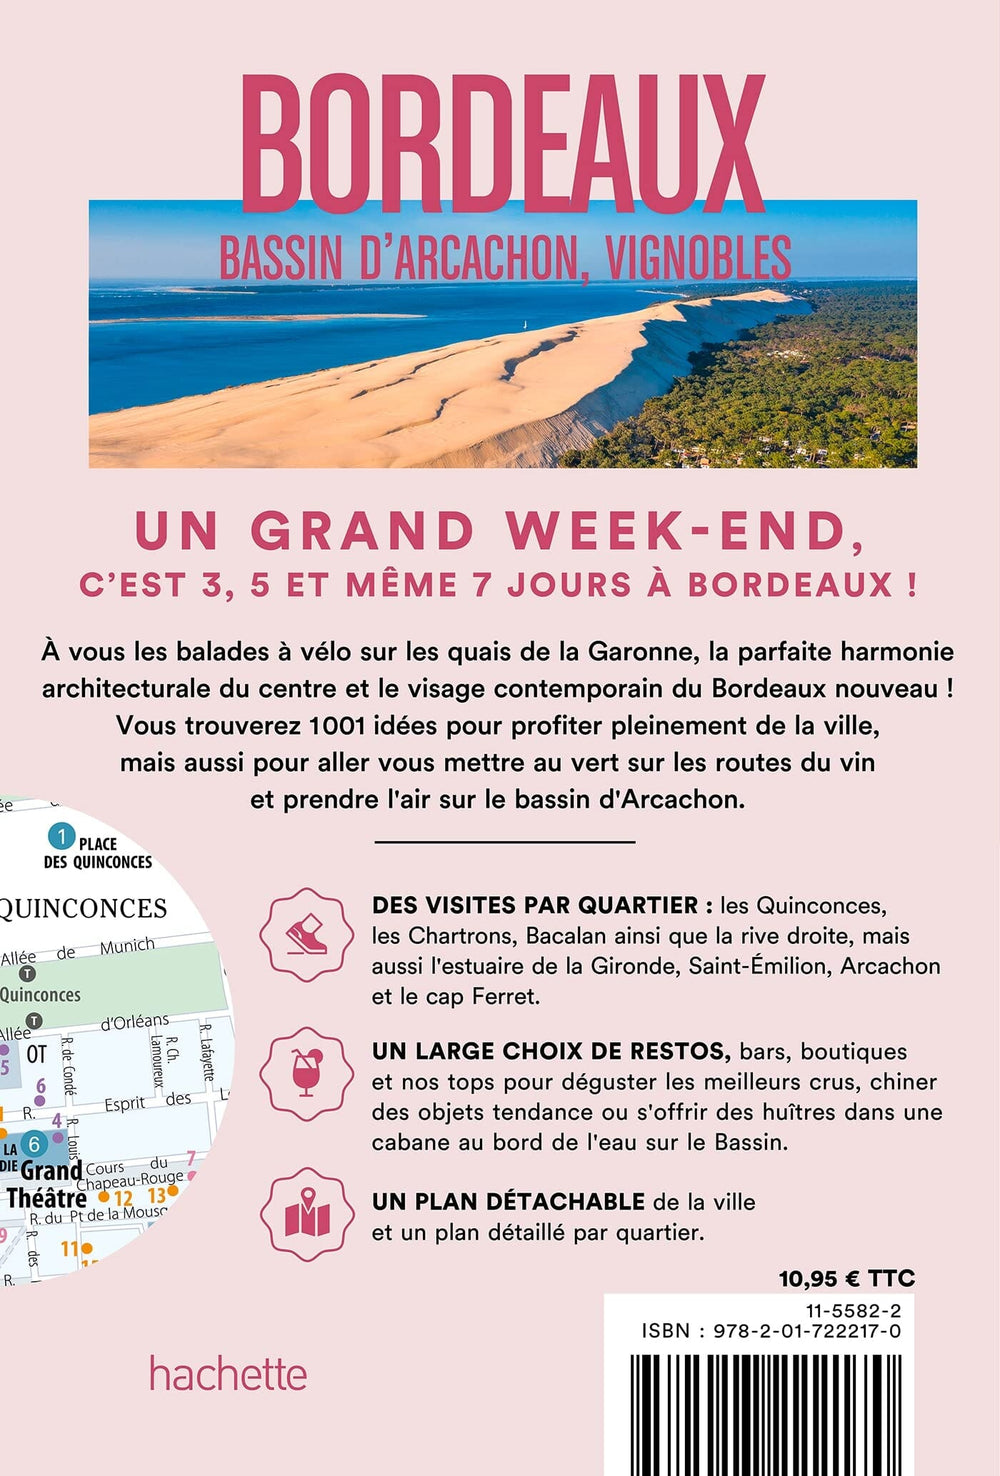 Guide de voyage de poche - Un Grand Week-end à Bordeaux & ses environs - Édition 2023 | Hachette guide petit format Hachette 